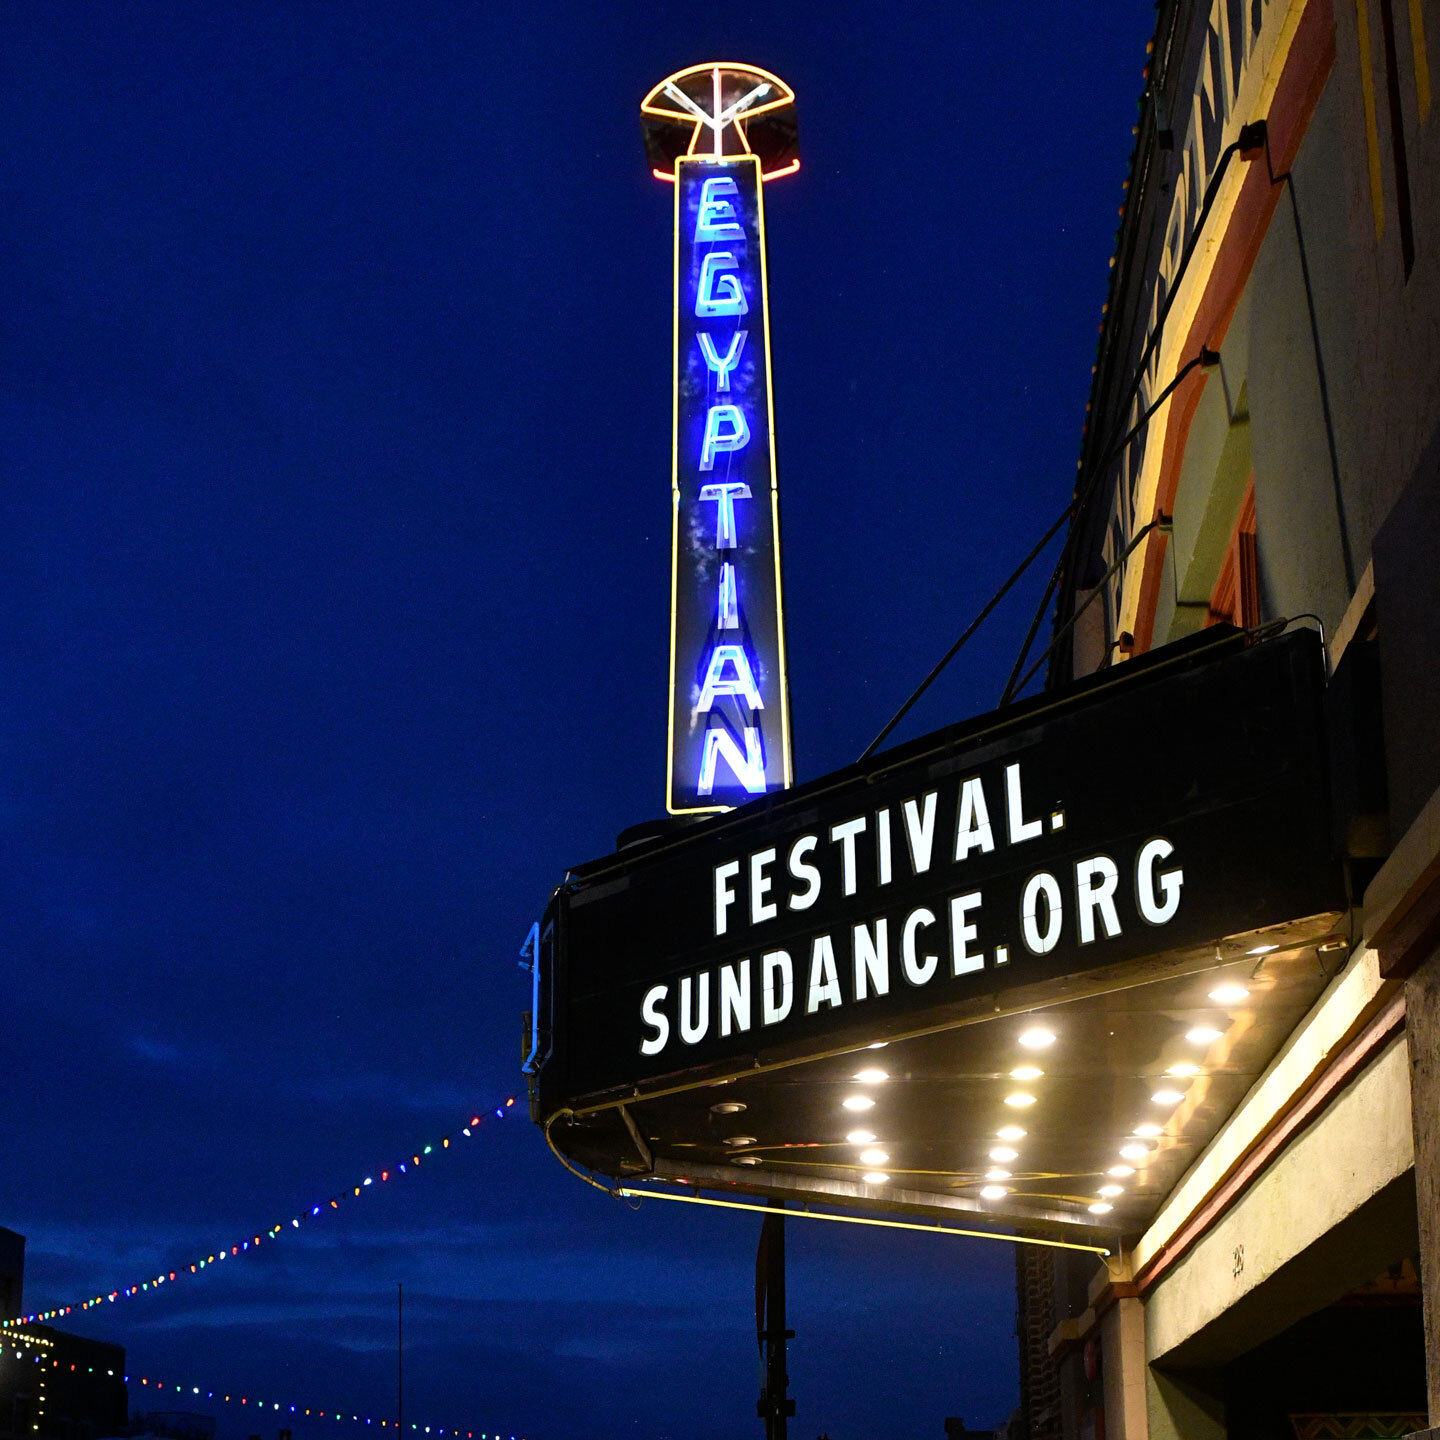 Место проведения фестиваля «Сандэнс», кинотеатр Egyptian, на вывеске размещена надпись Festival.Sundance.Org.